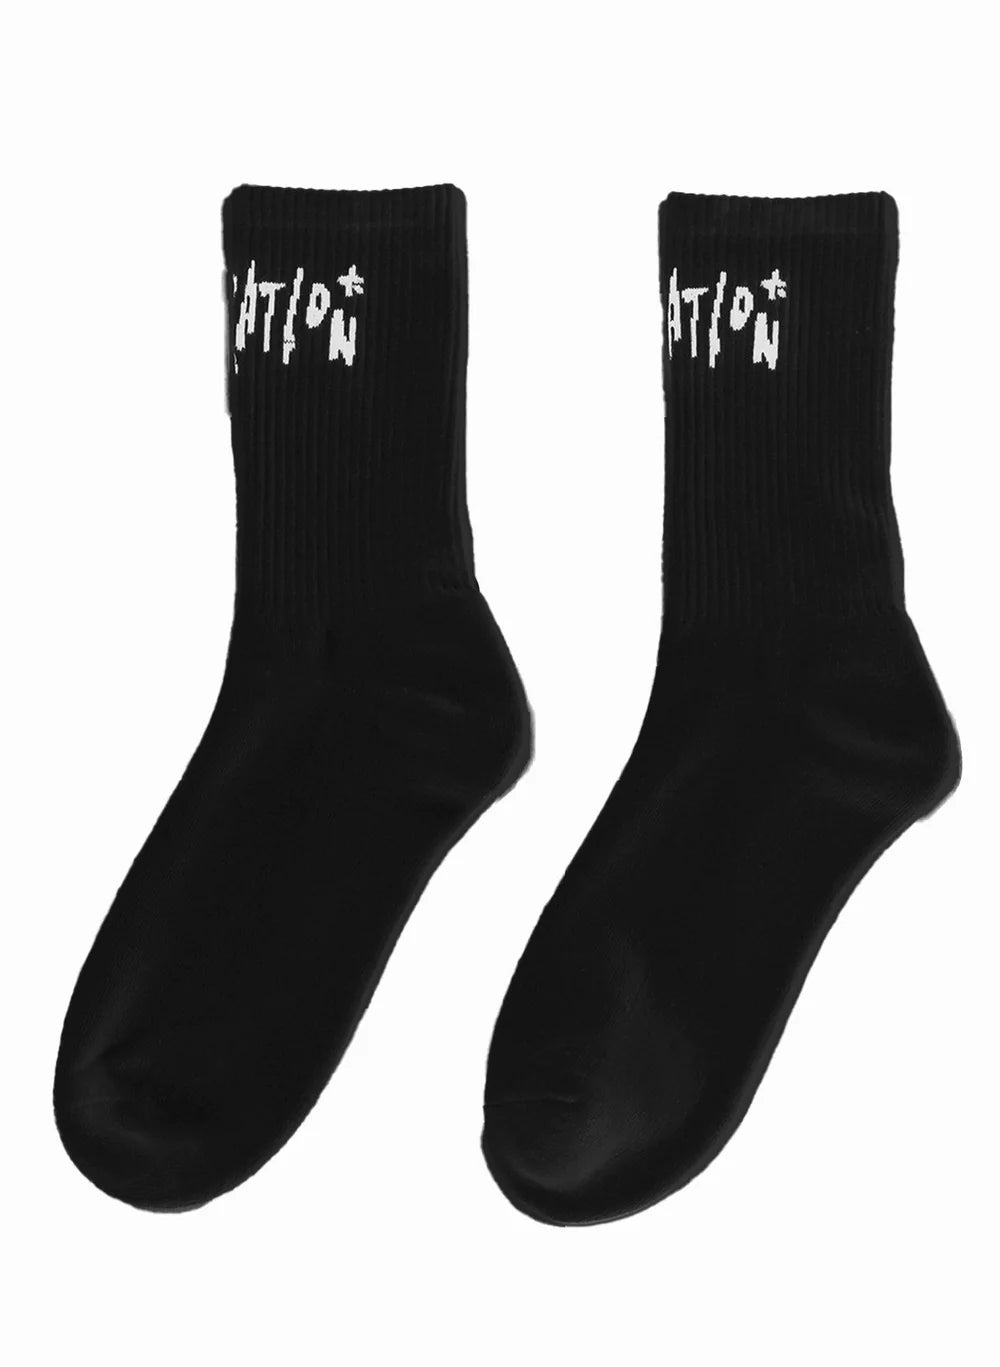 Inked Socks 2PK - Chillis & More NZ